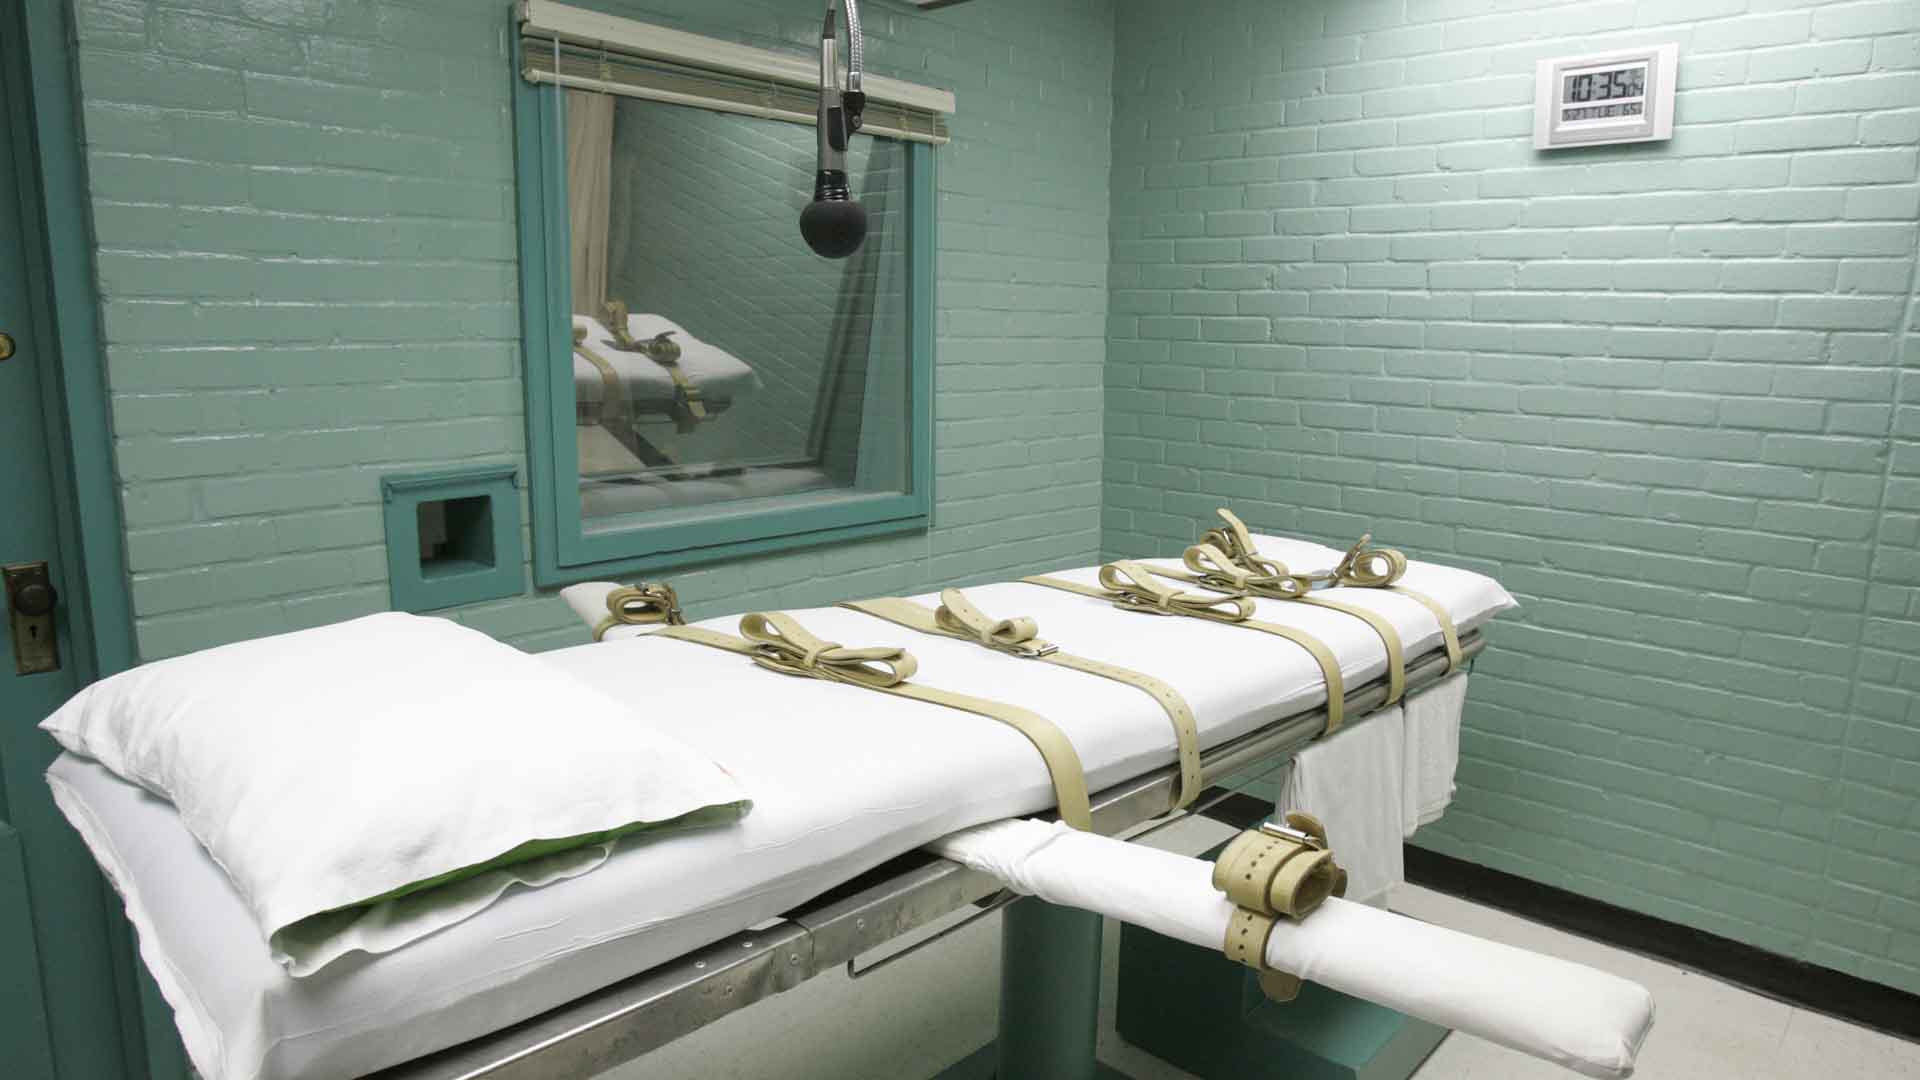 El Gobierno de Trump reactiva la pena de muerte a nivel federal